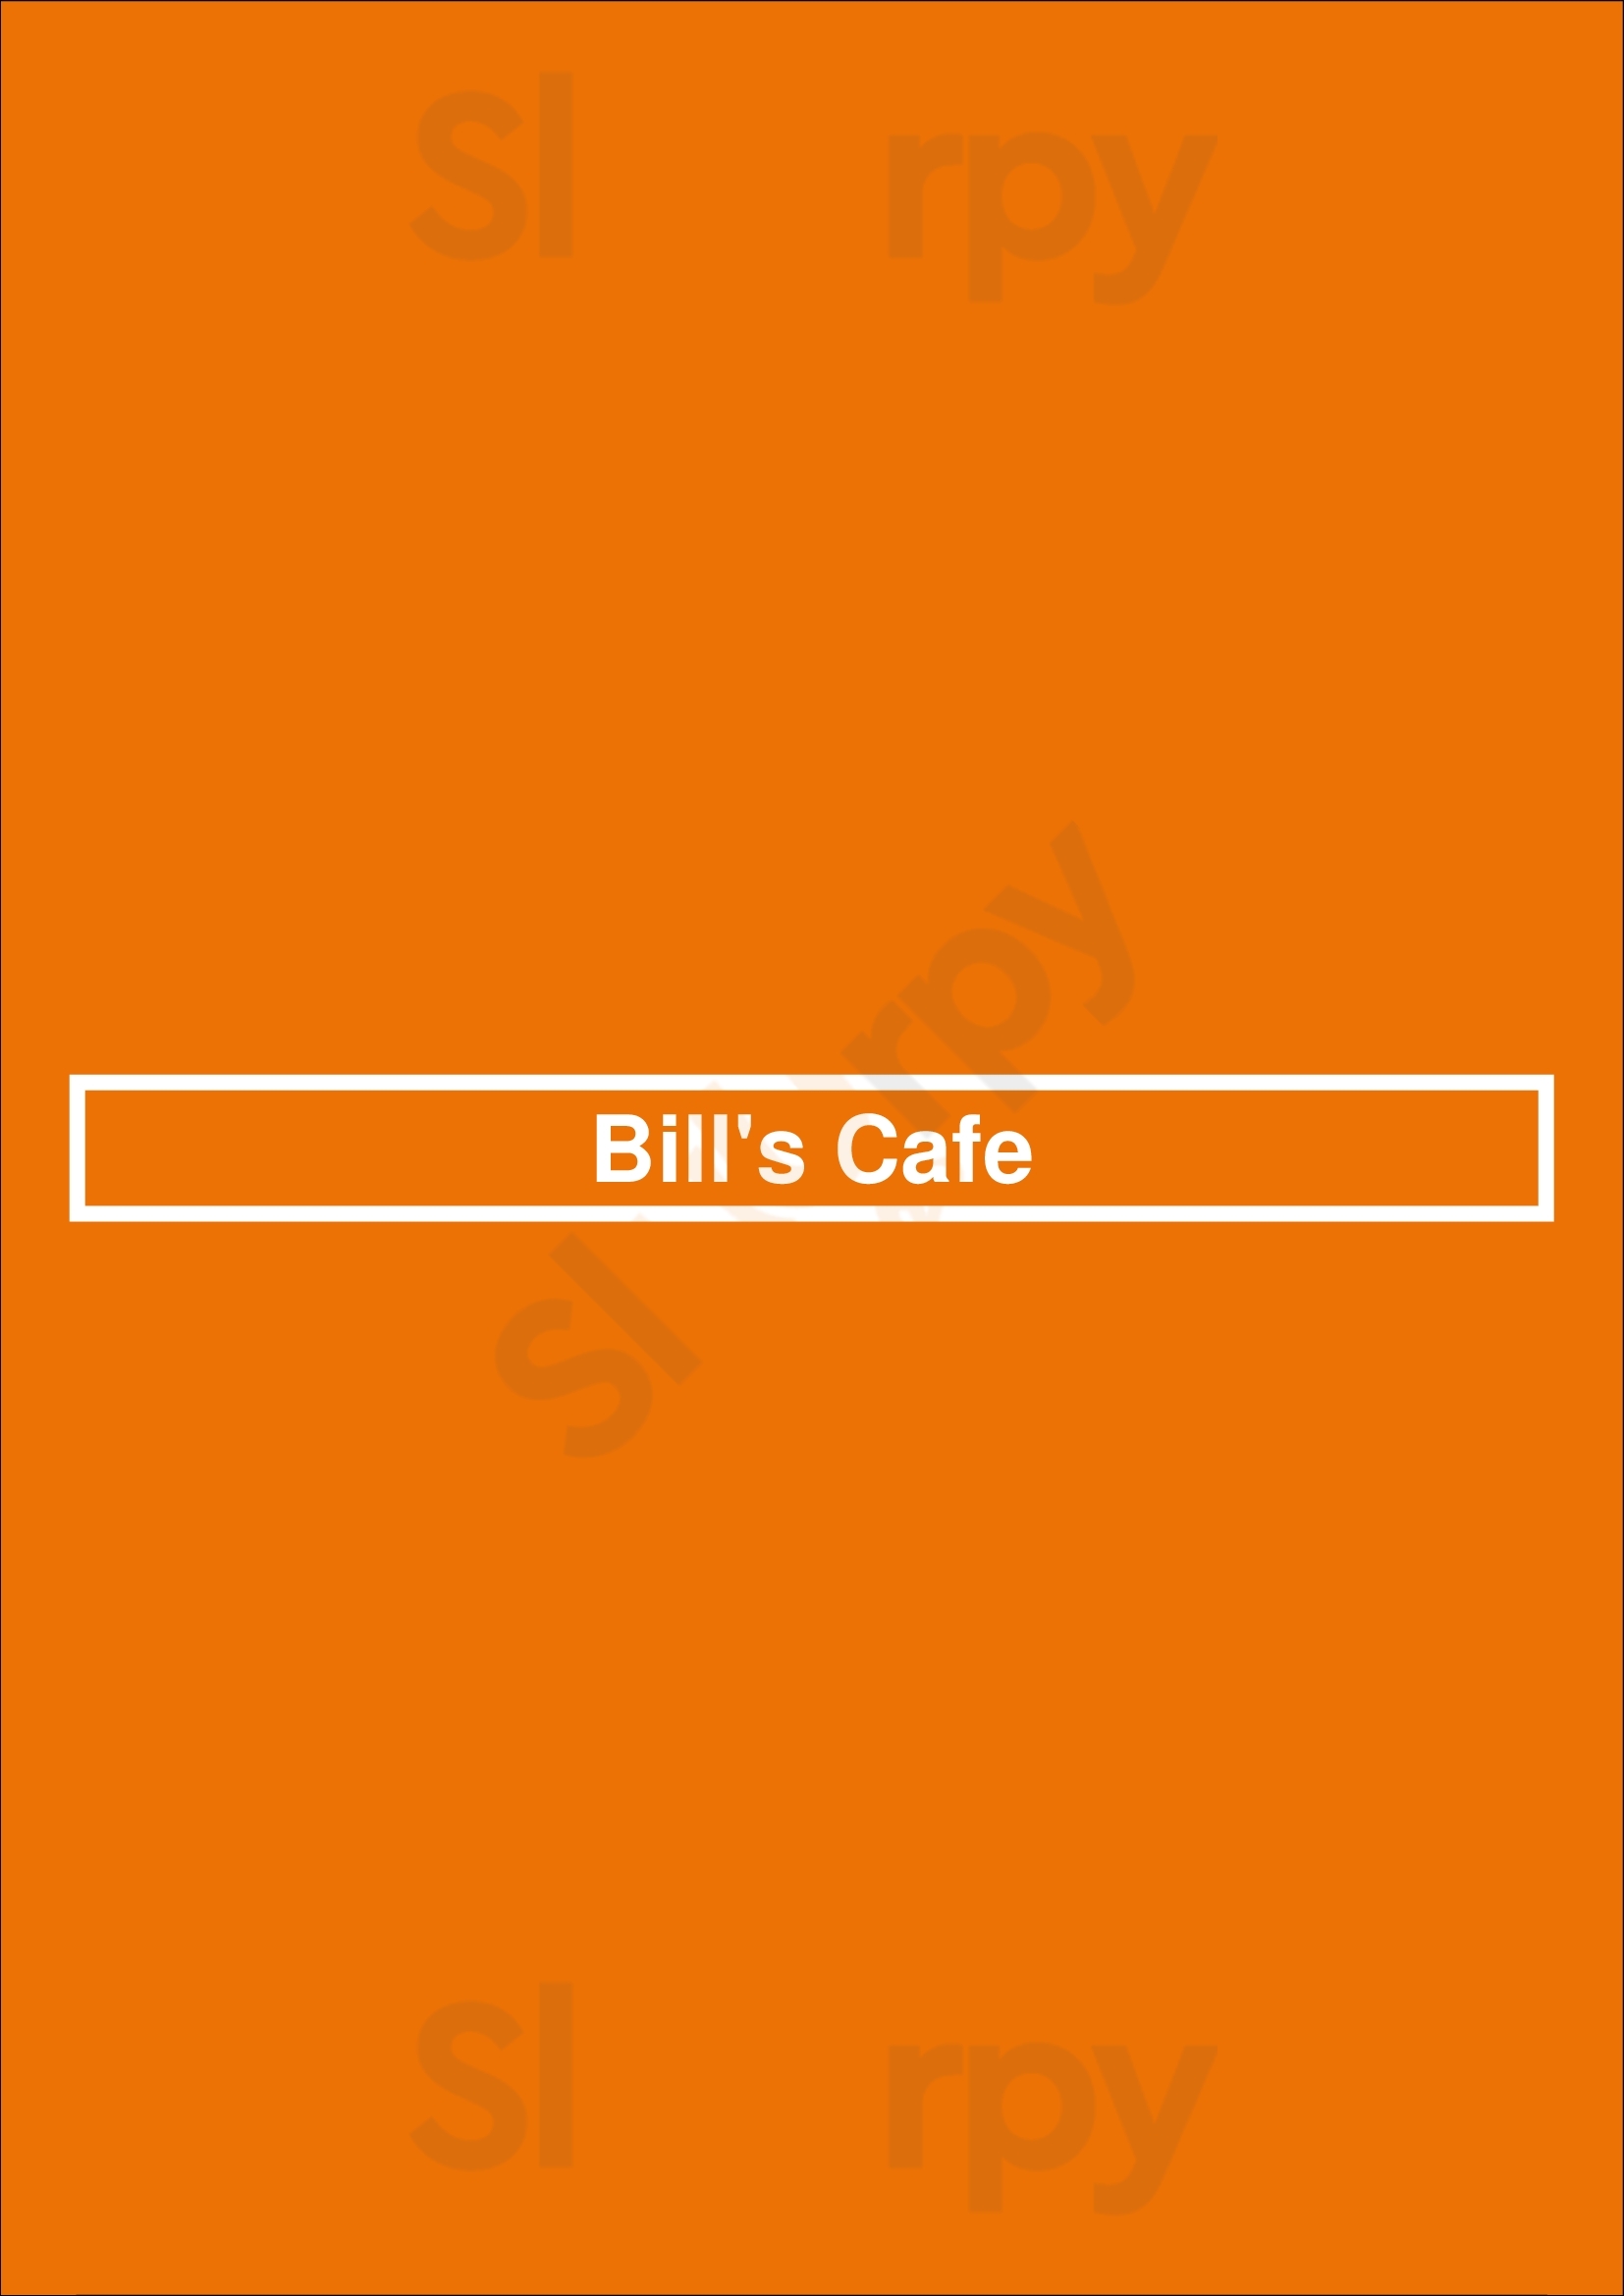 Bill's Cafe San Jose Menu - 1